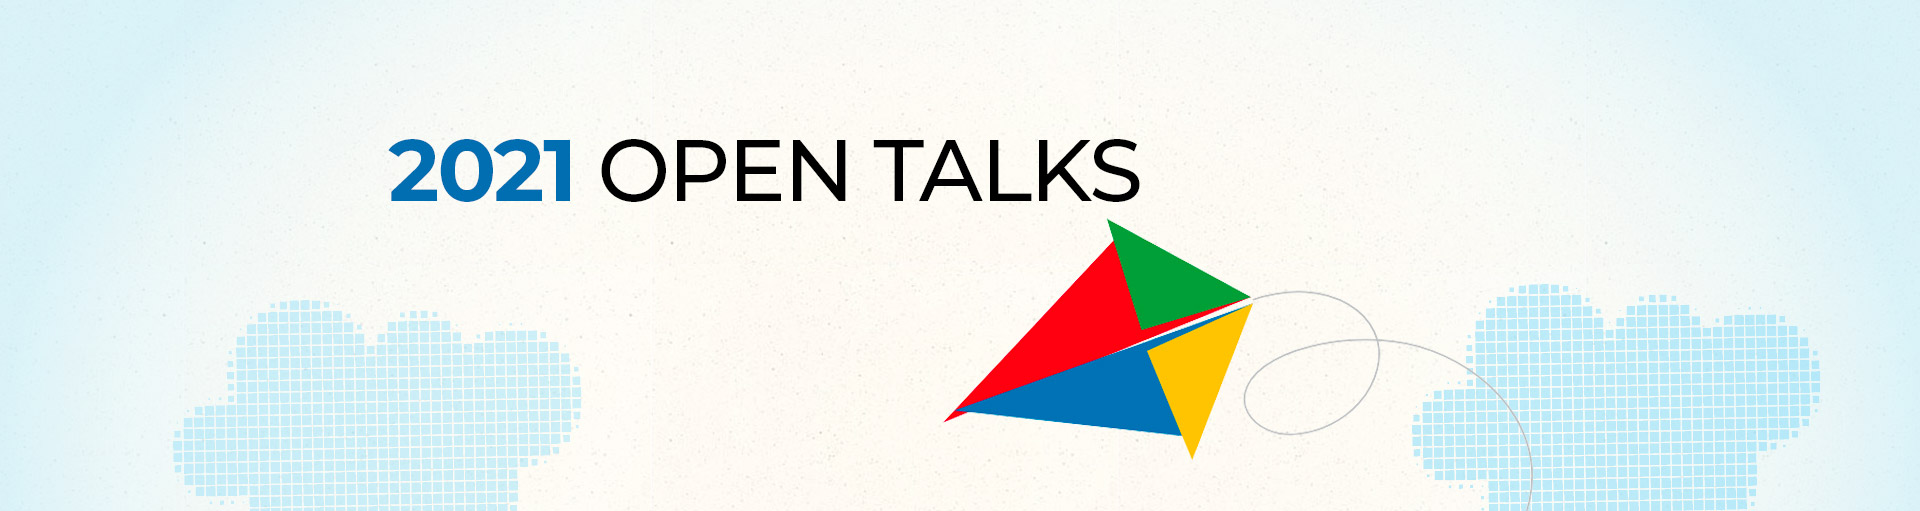 Futura open talks